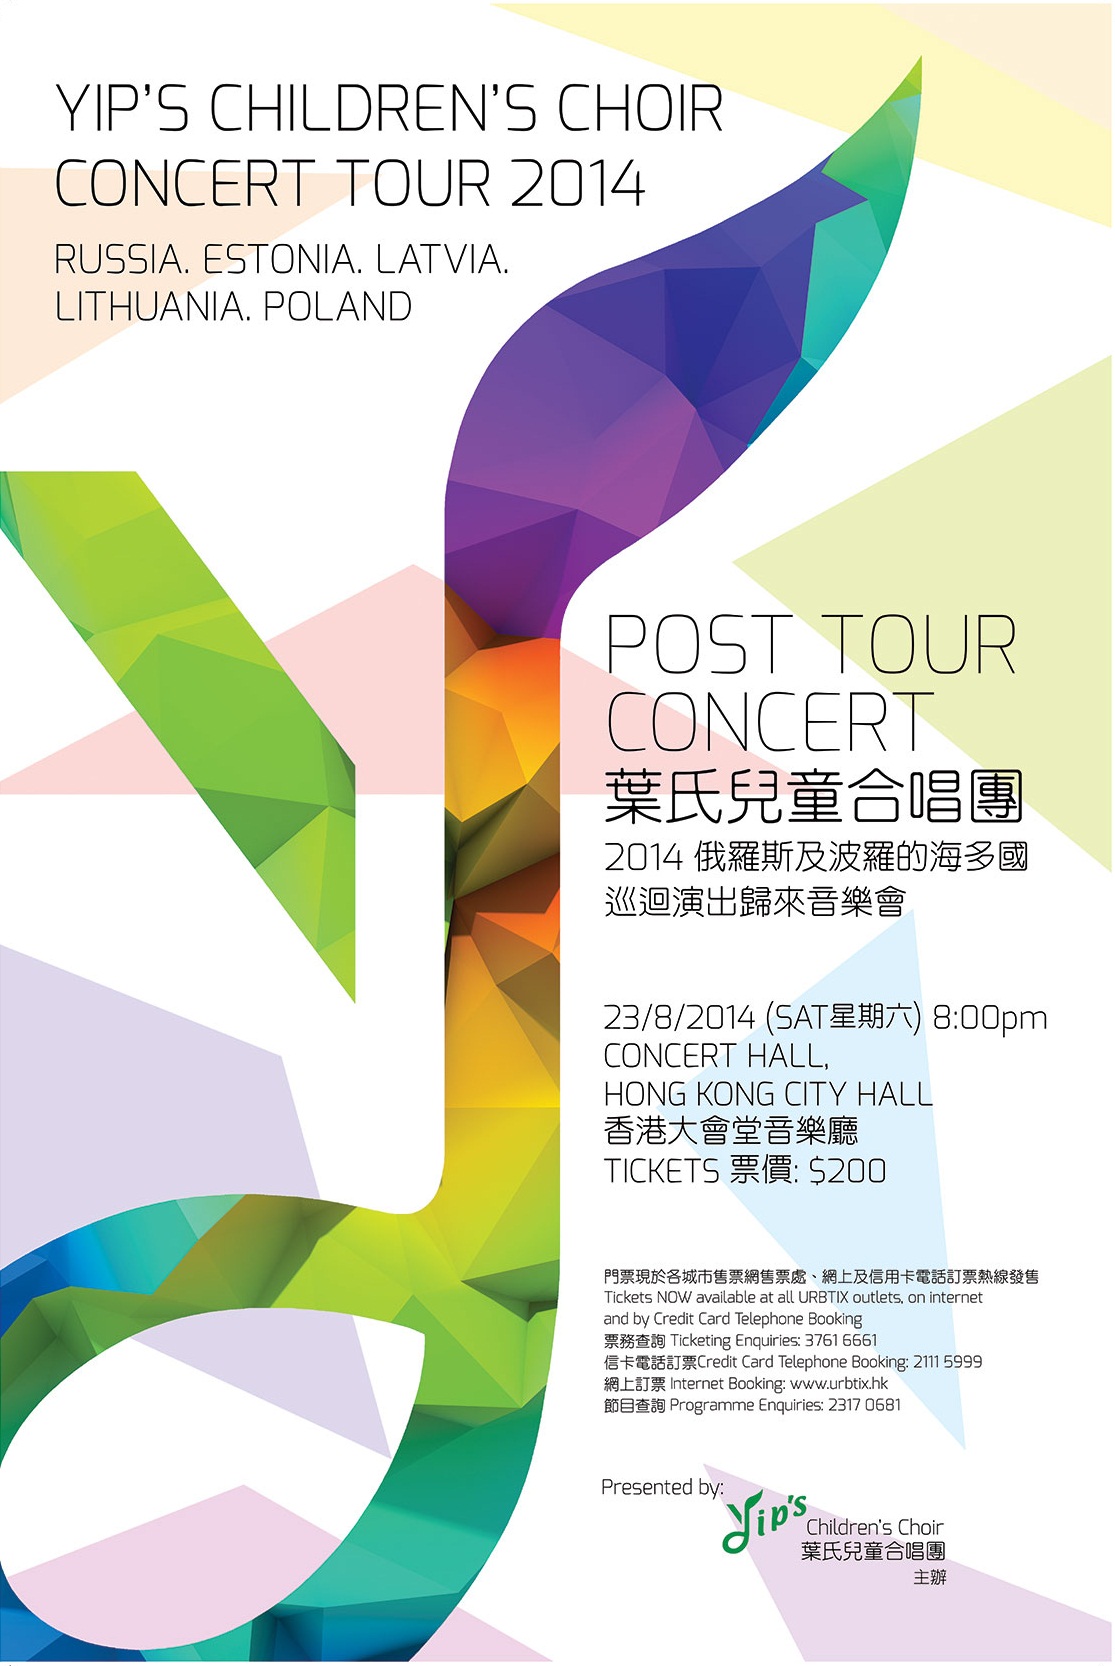 2014 Post Tour Concert